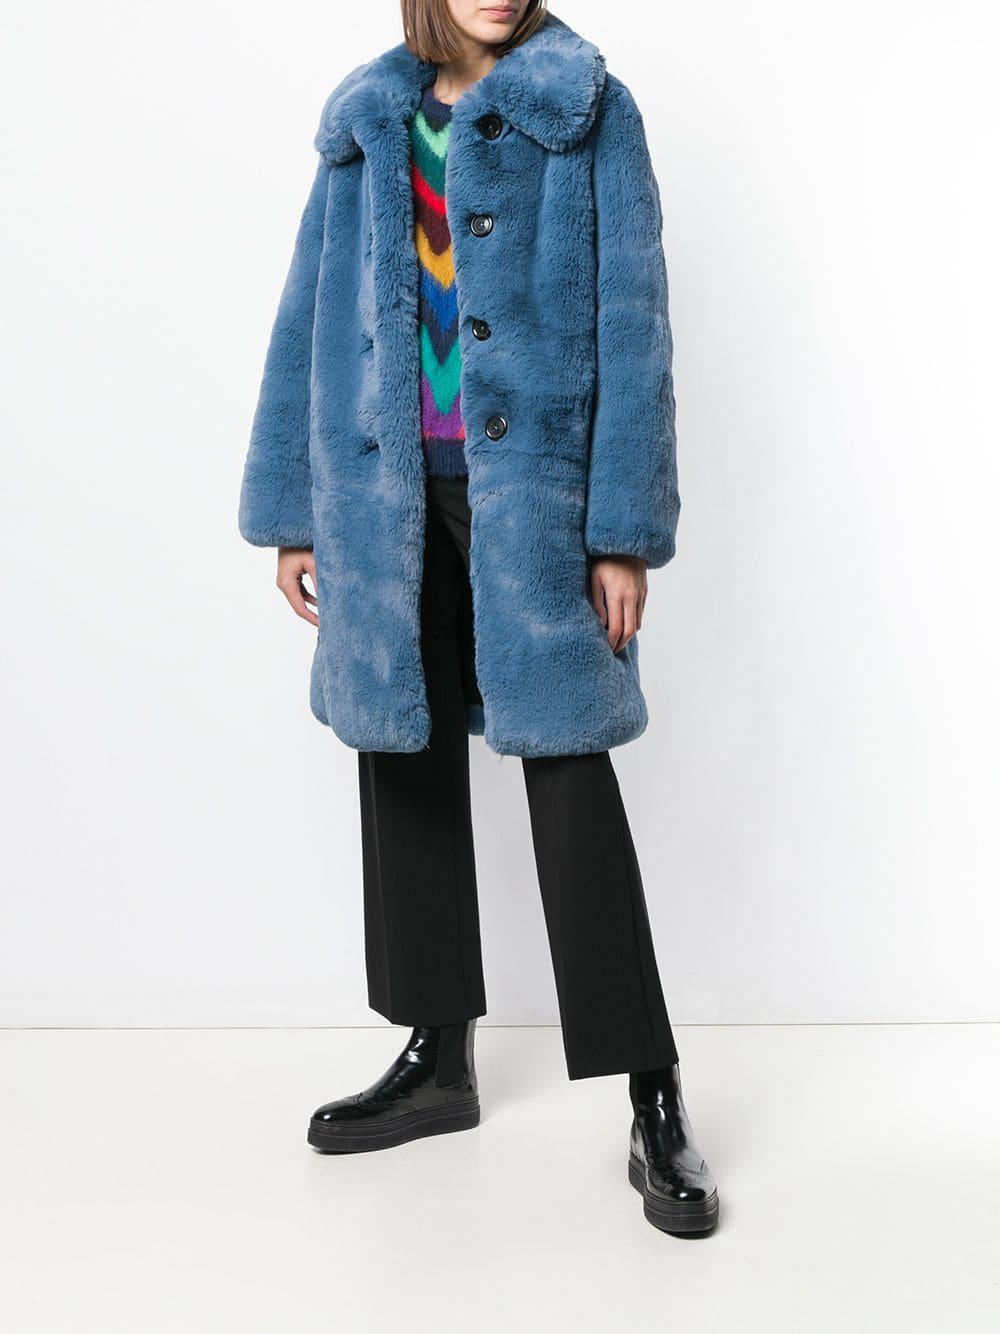 Marc Jacobs Plush Faux Fur Coat in Blue - Lyst